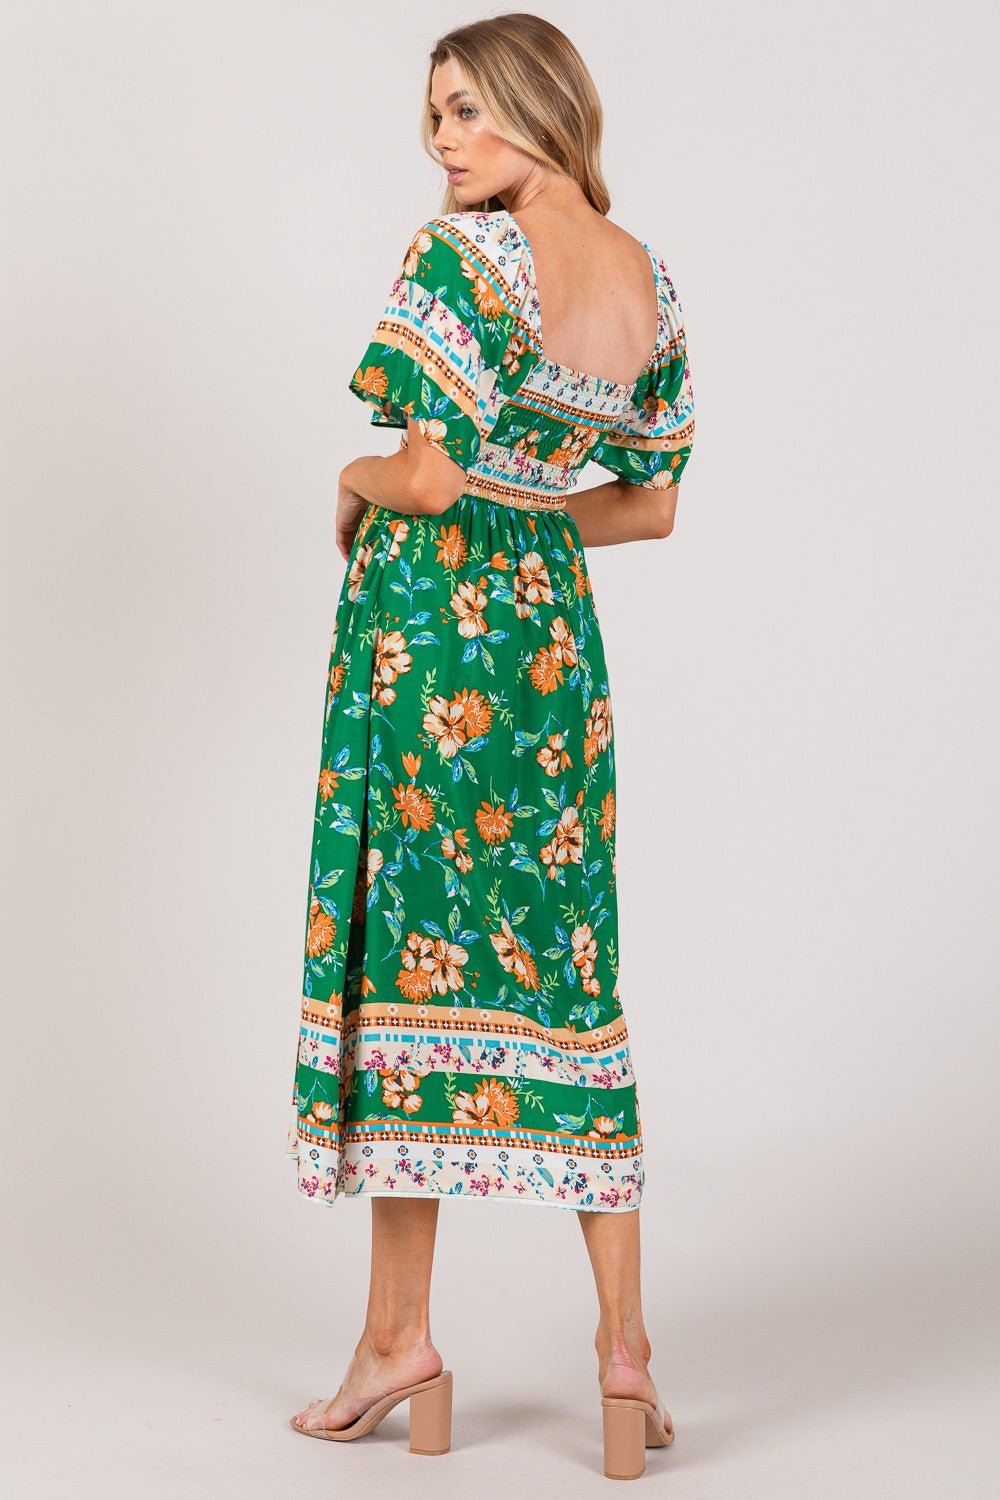 SAGE + FIG Printed Smocked Short Sleeve Midi Dress - BloomBliss.com